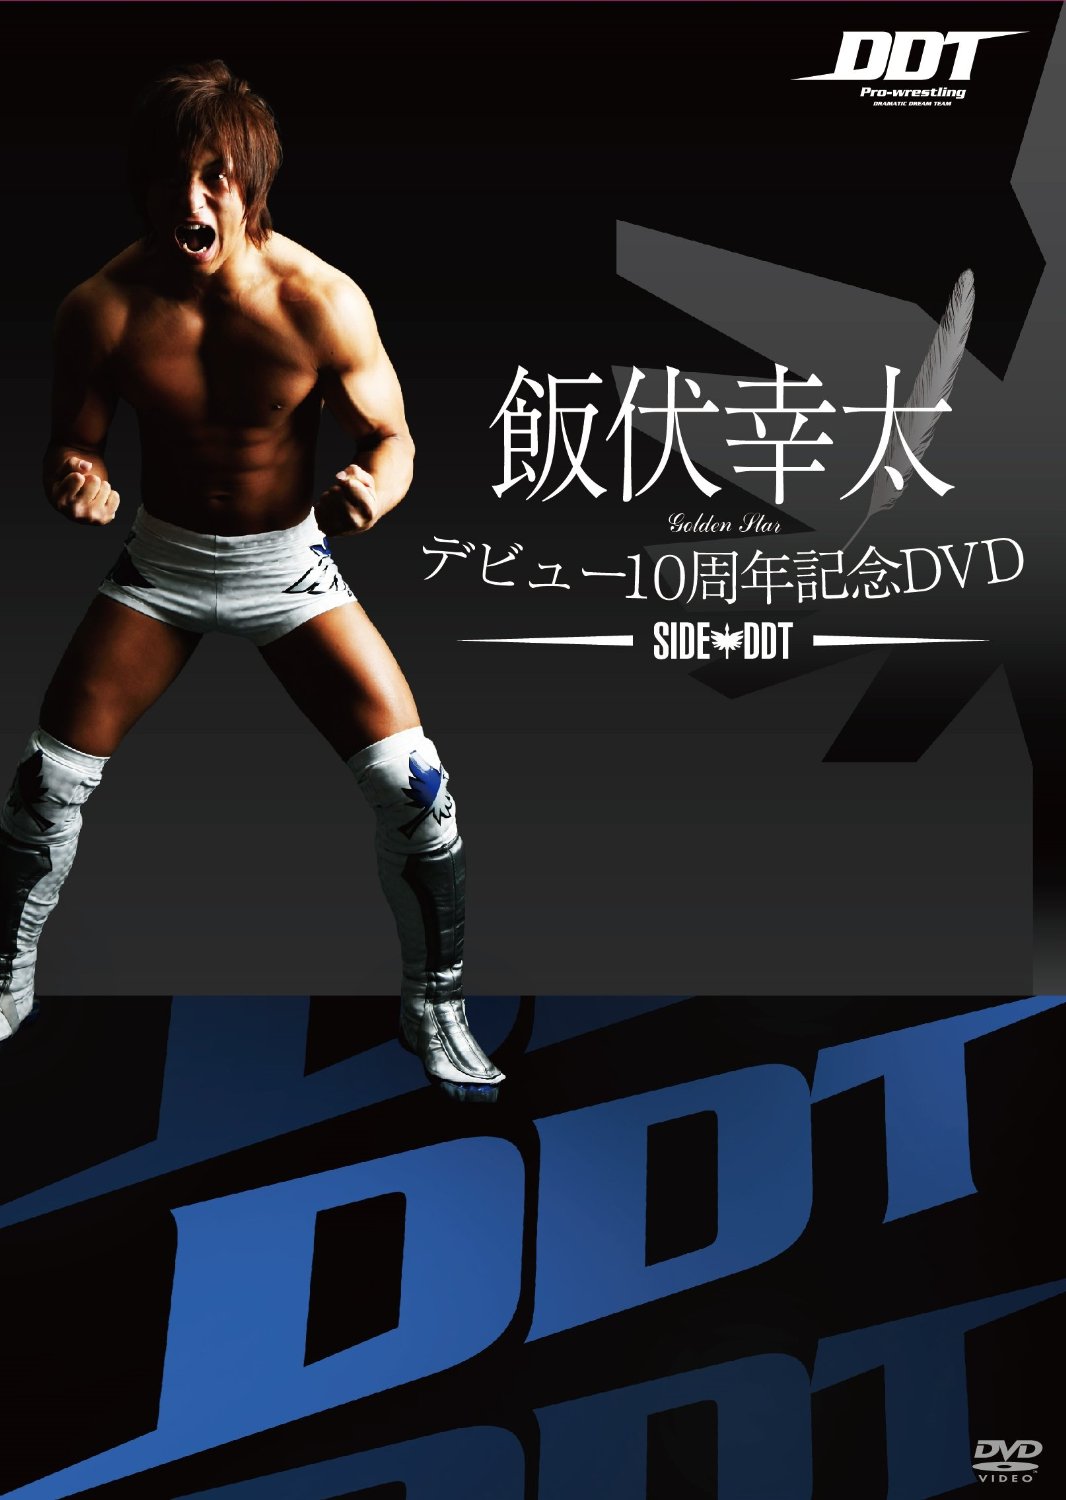 飯伏幸太デビュー10周年記念DVD SIDE DDT